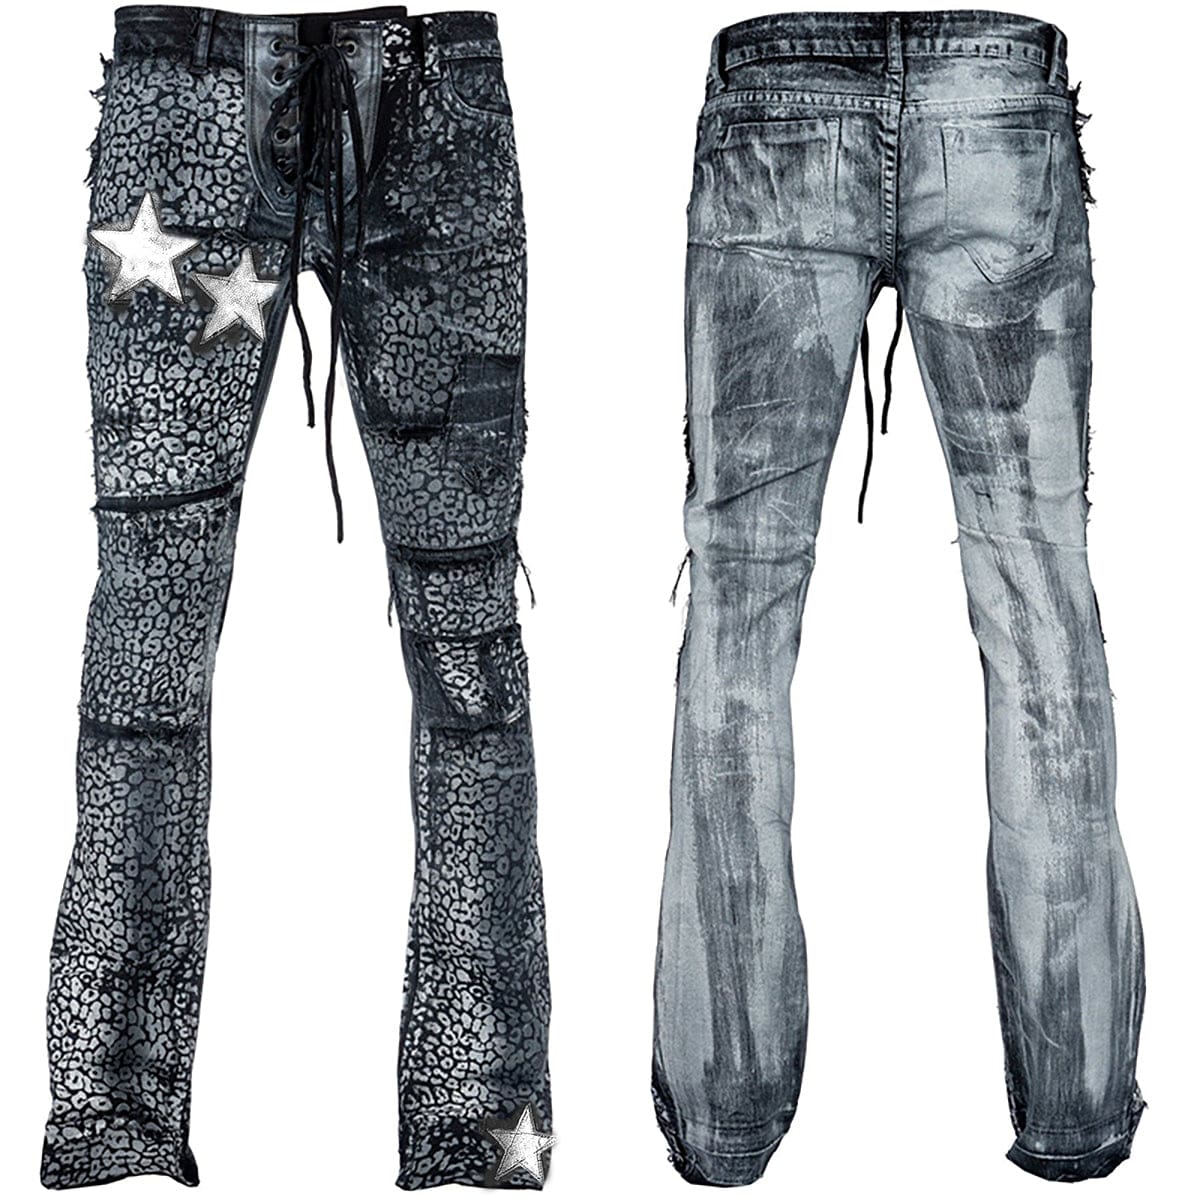 Custom Chop Shop Pants Wornstar Custom Jeans - Glam Bam